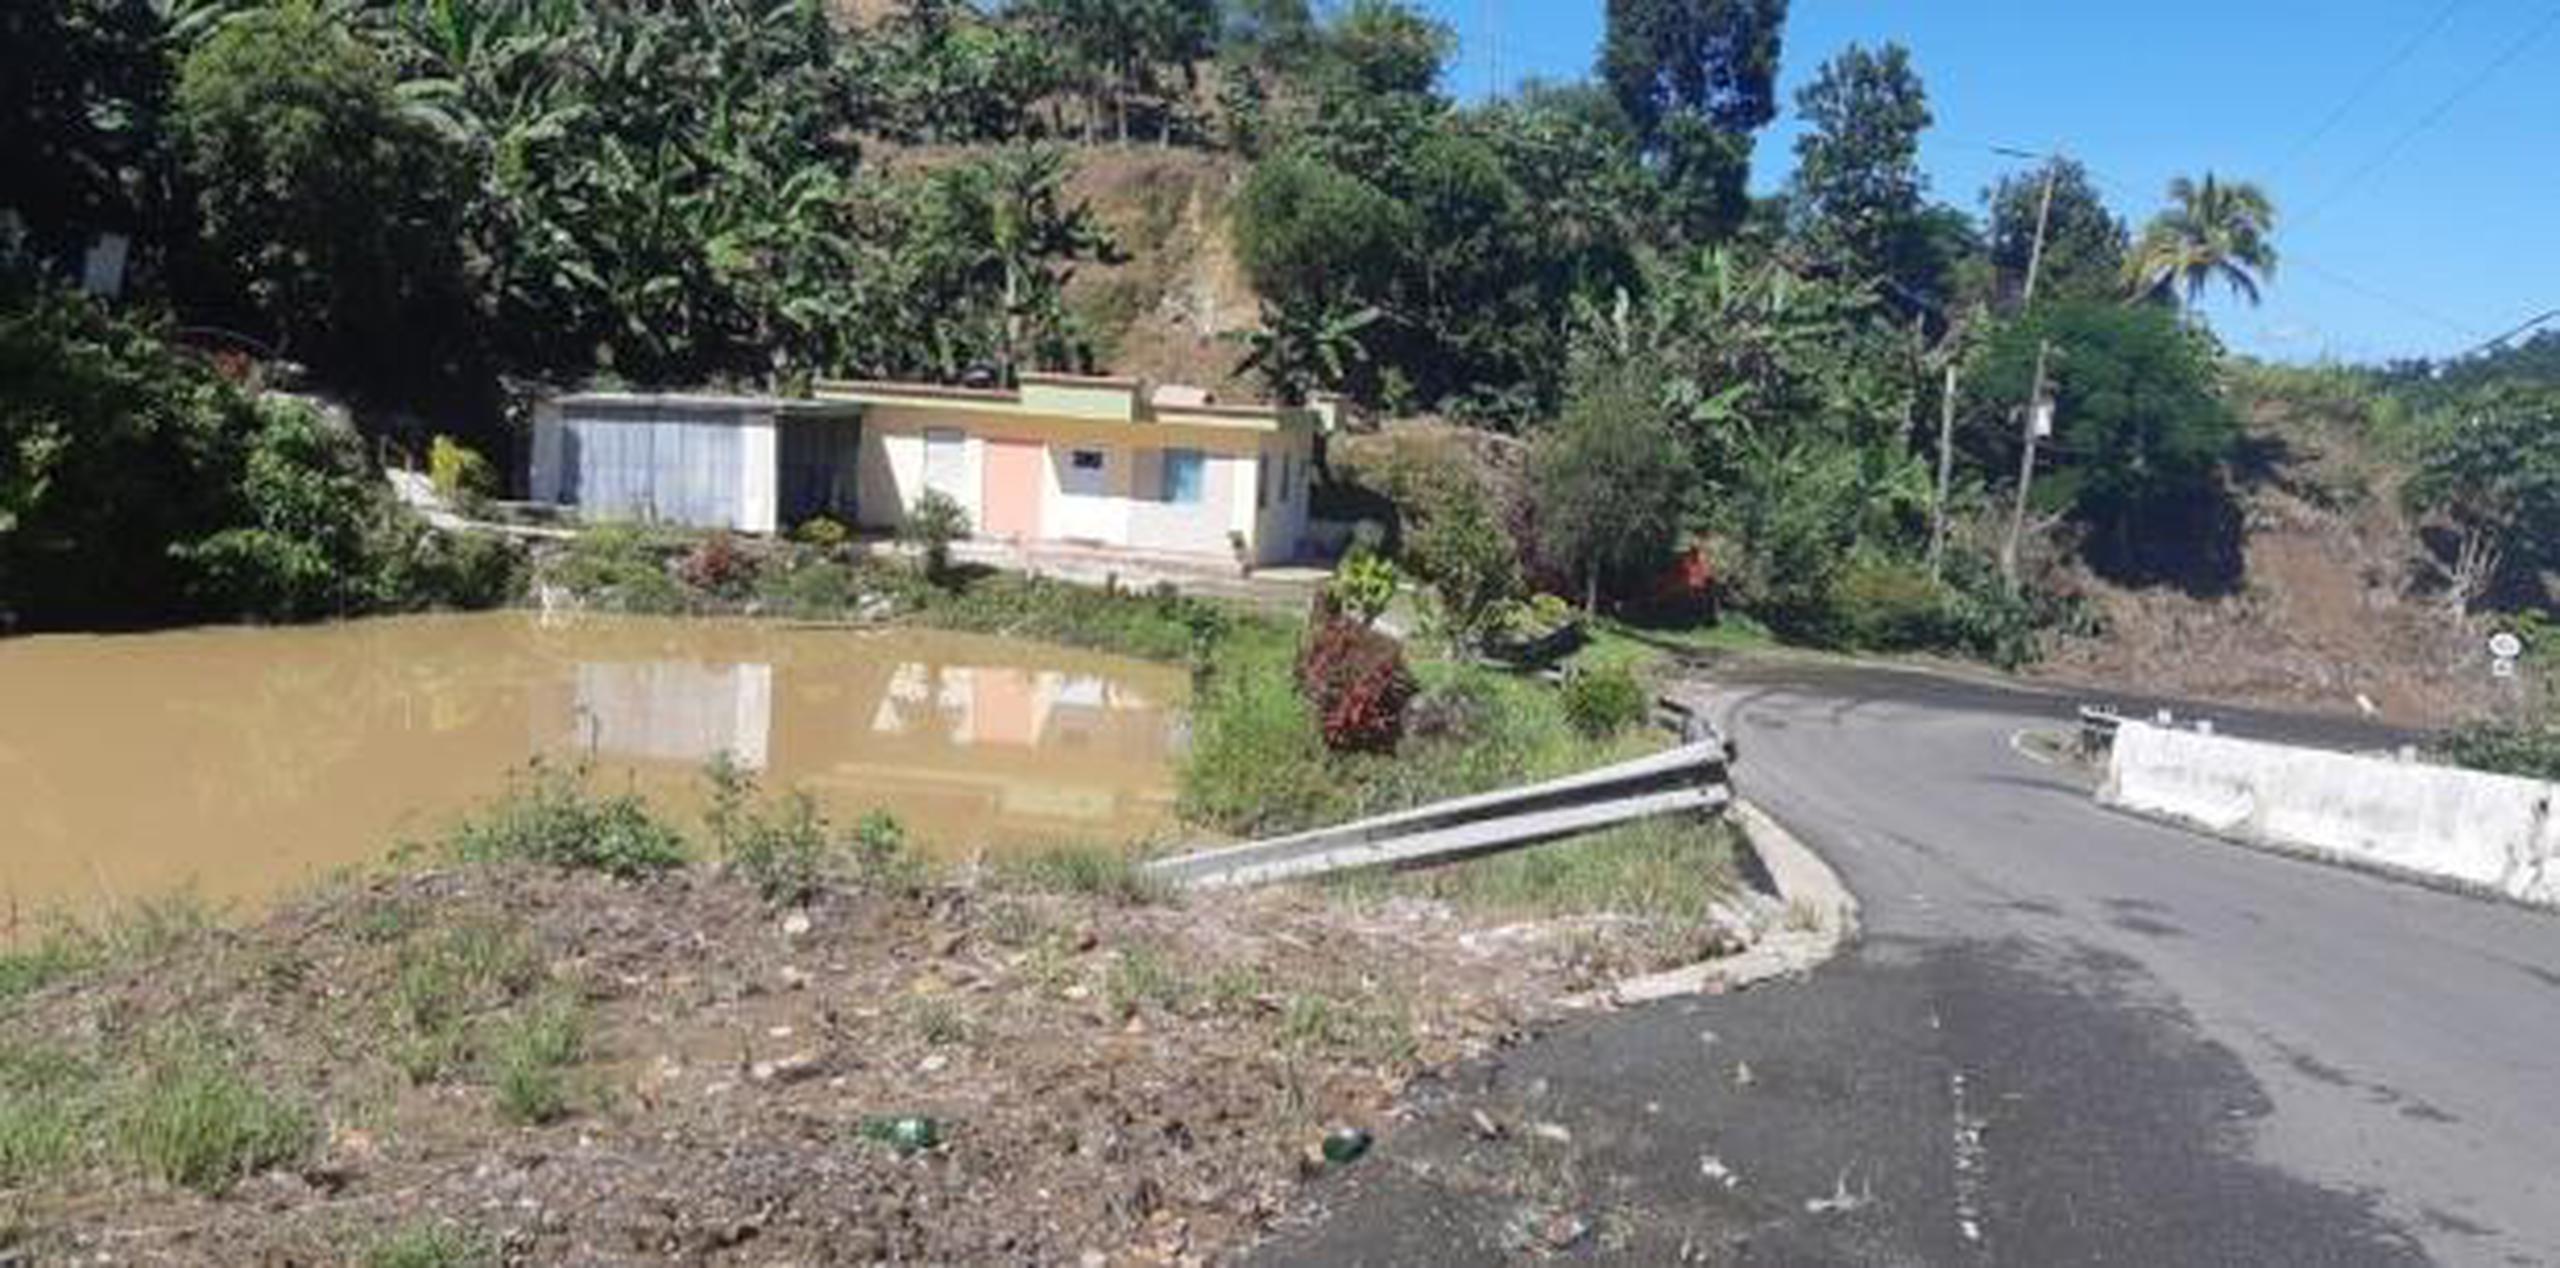 Si las alcantarillas colapsaran quedarían incomunicados los barrios Pezuela 1 y 2, Mirasol, Bartolo, parte de Castañer y parte de Río Prieto. (Suministrada)